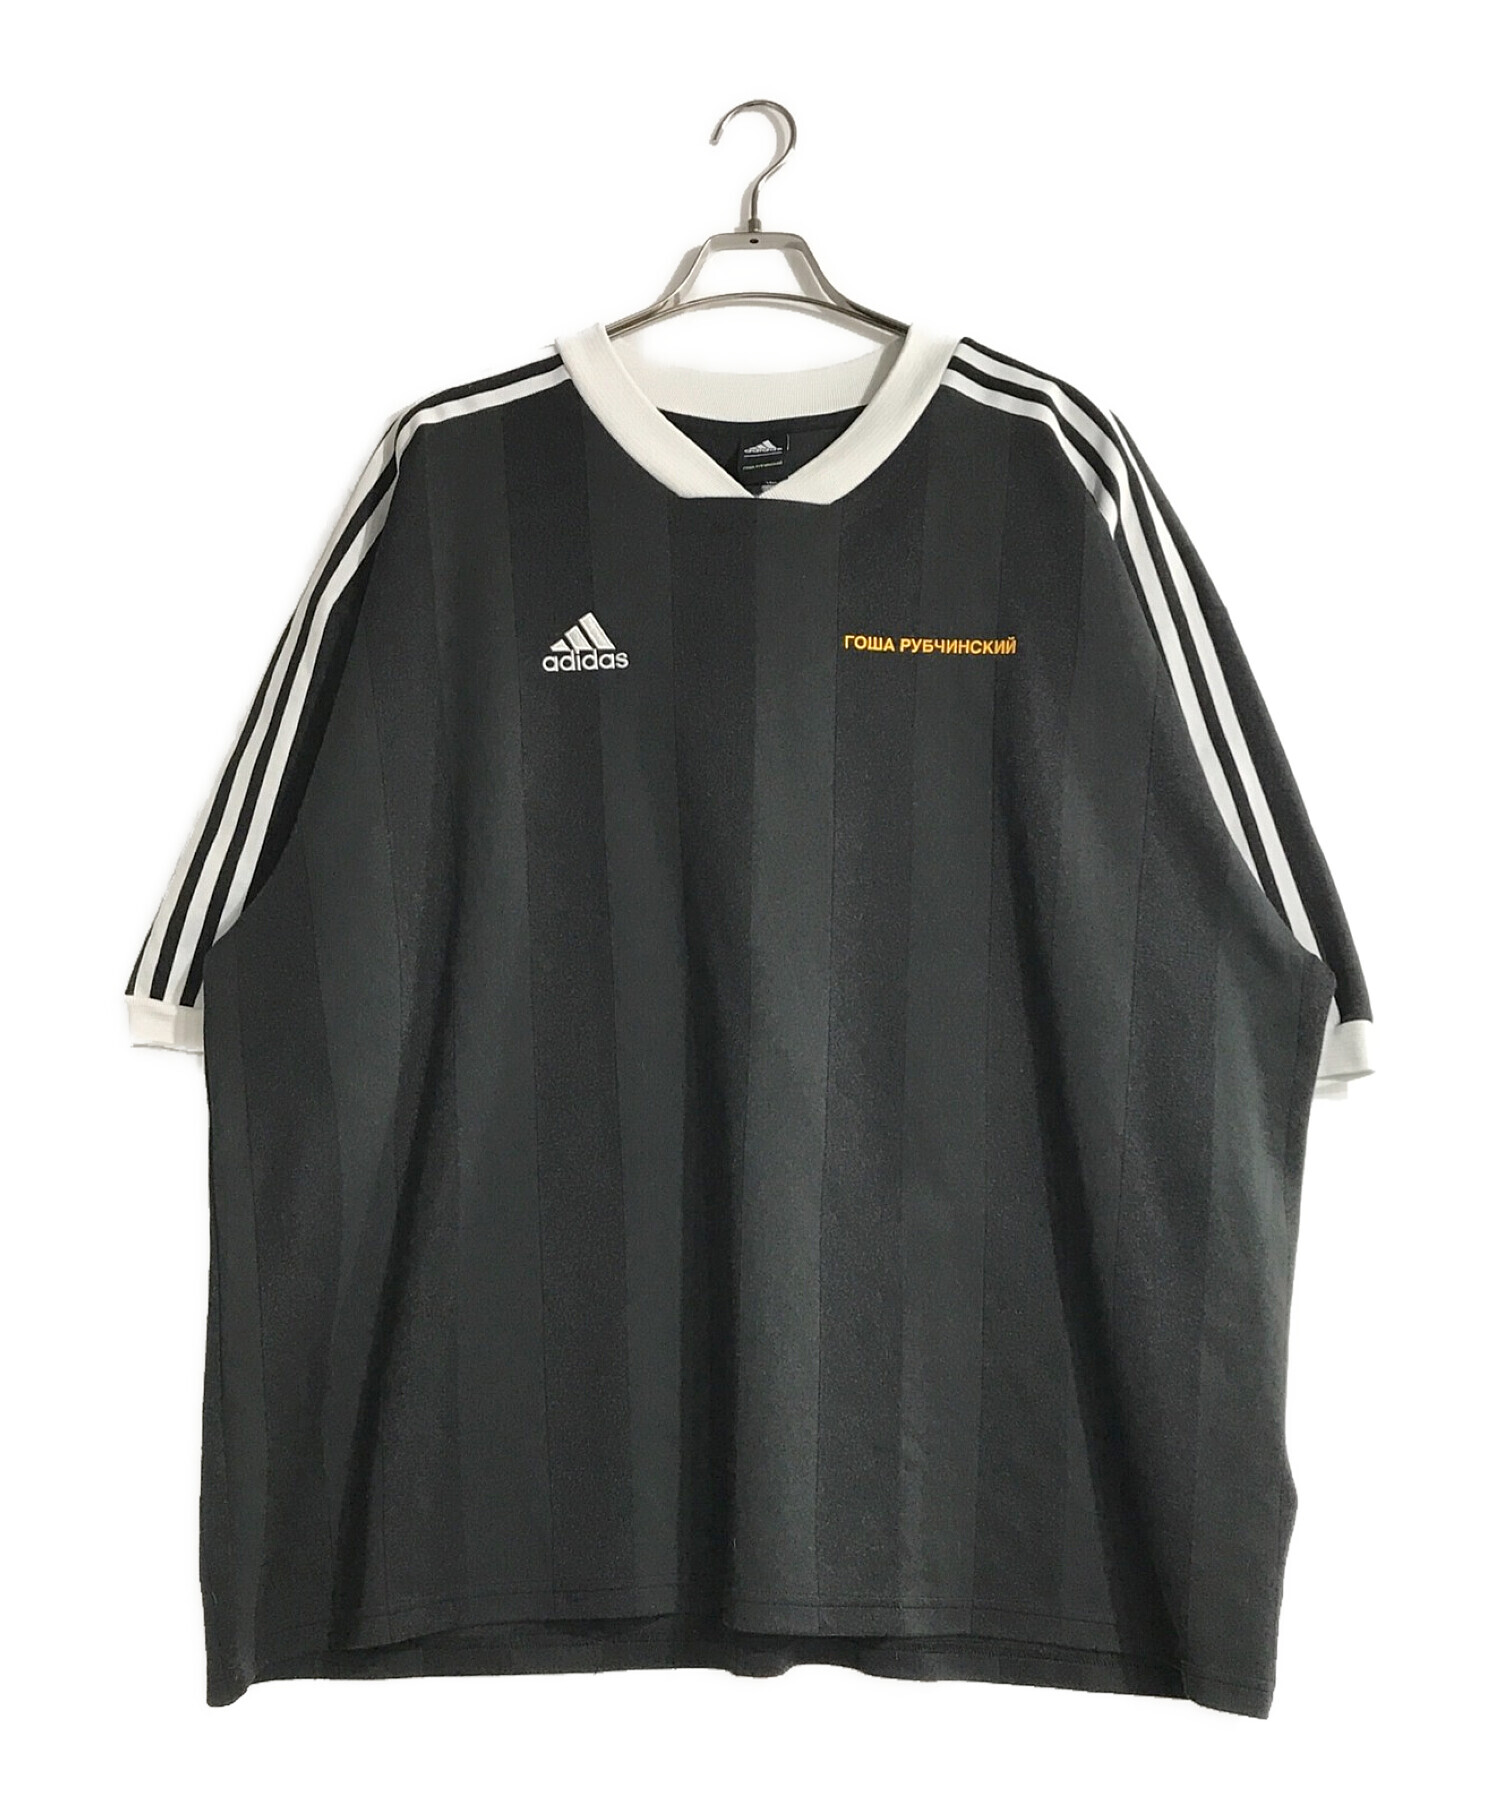 adidas × Gosha Rubchinskiy (アディダス × ゴーシャラブチンスキー) ゲームシャツ ブラック サイズ:XL